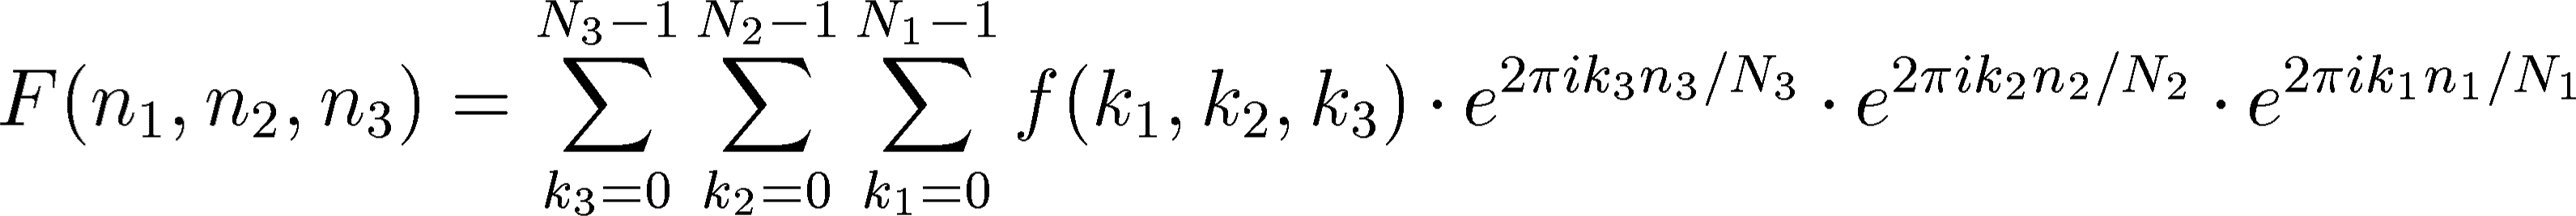 \begin{displaymath}
F(n_{1},n_{2},n_{3})=\sum_{k_{3}=0}^{N_{3}-1}\sum_{k_{2}=0}...
... e^{2\pi ik_{2}n_{2}/N_{2}}\cdot
e^{2\pi ik_{1}n_{1}/N_{1}}
\end{displaymath}